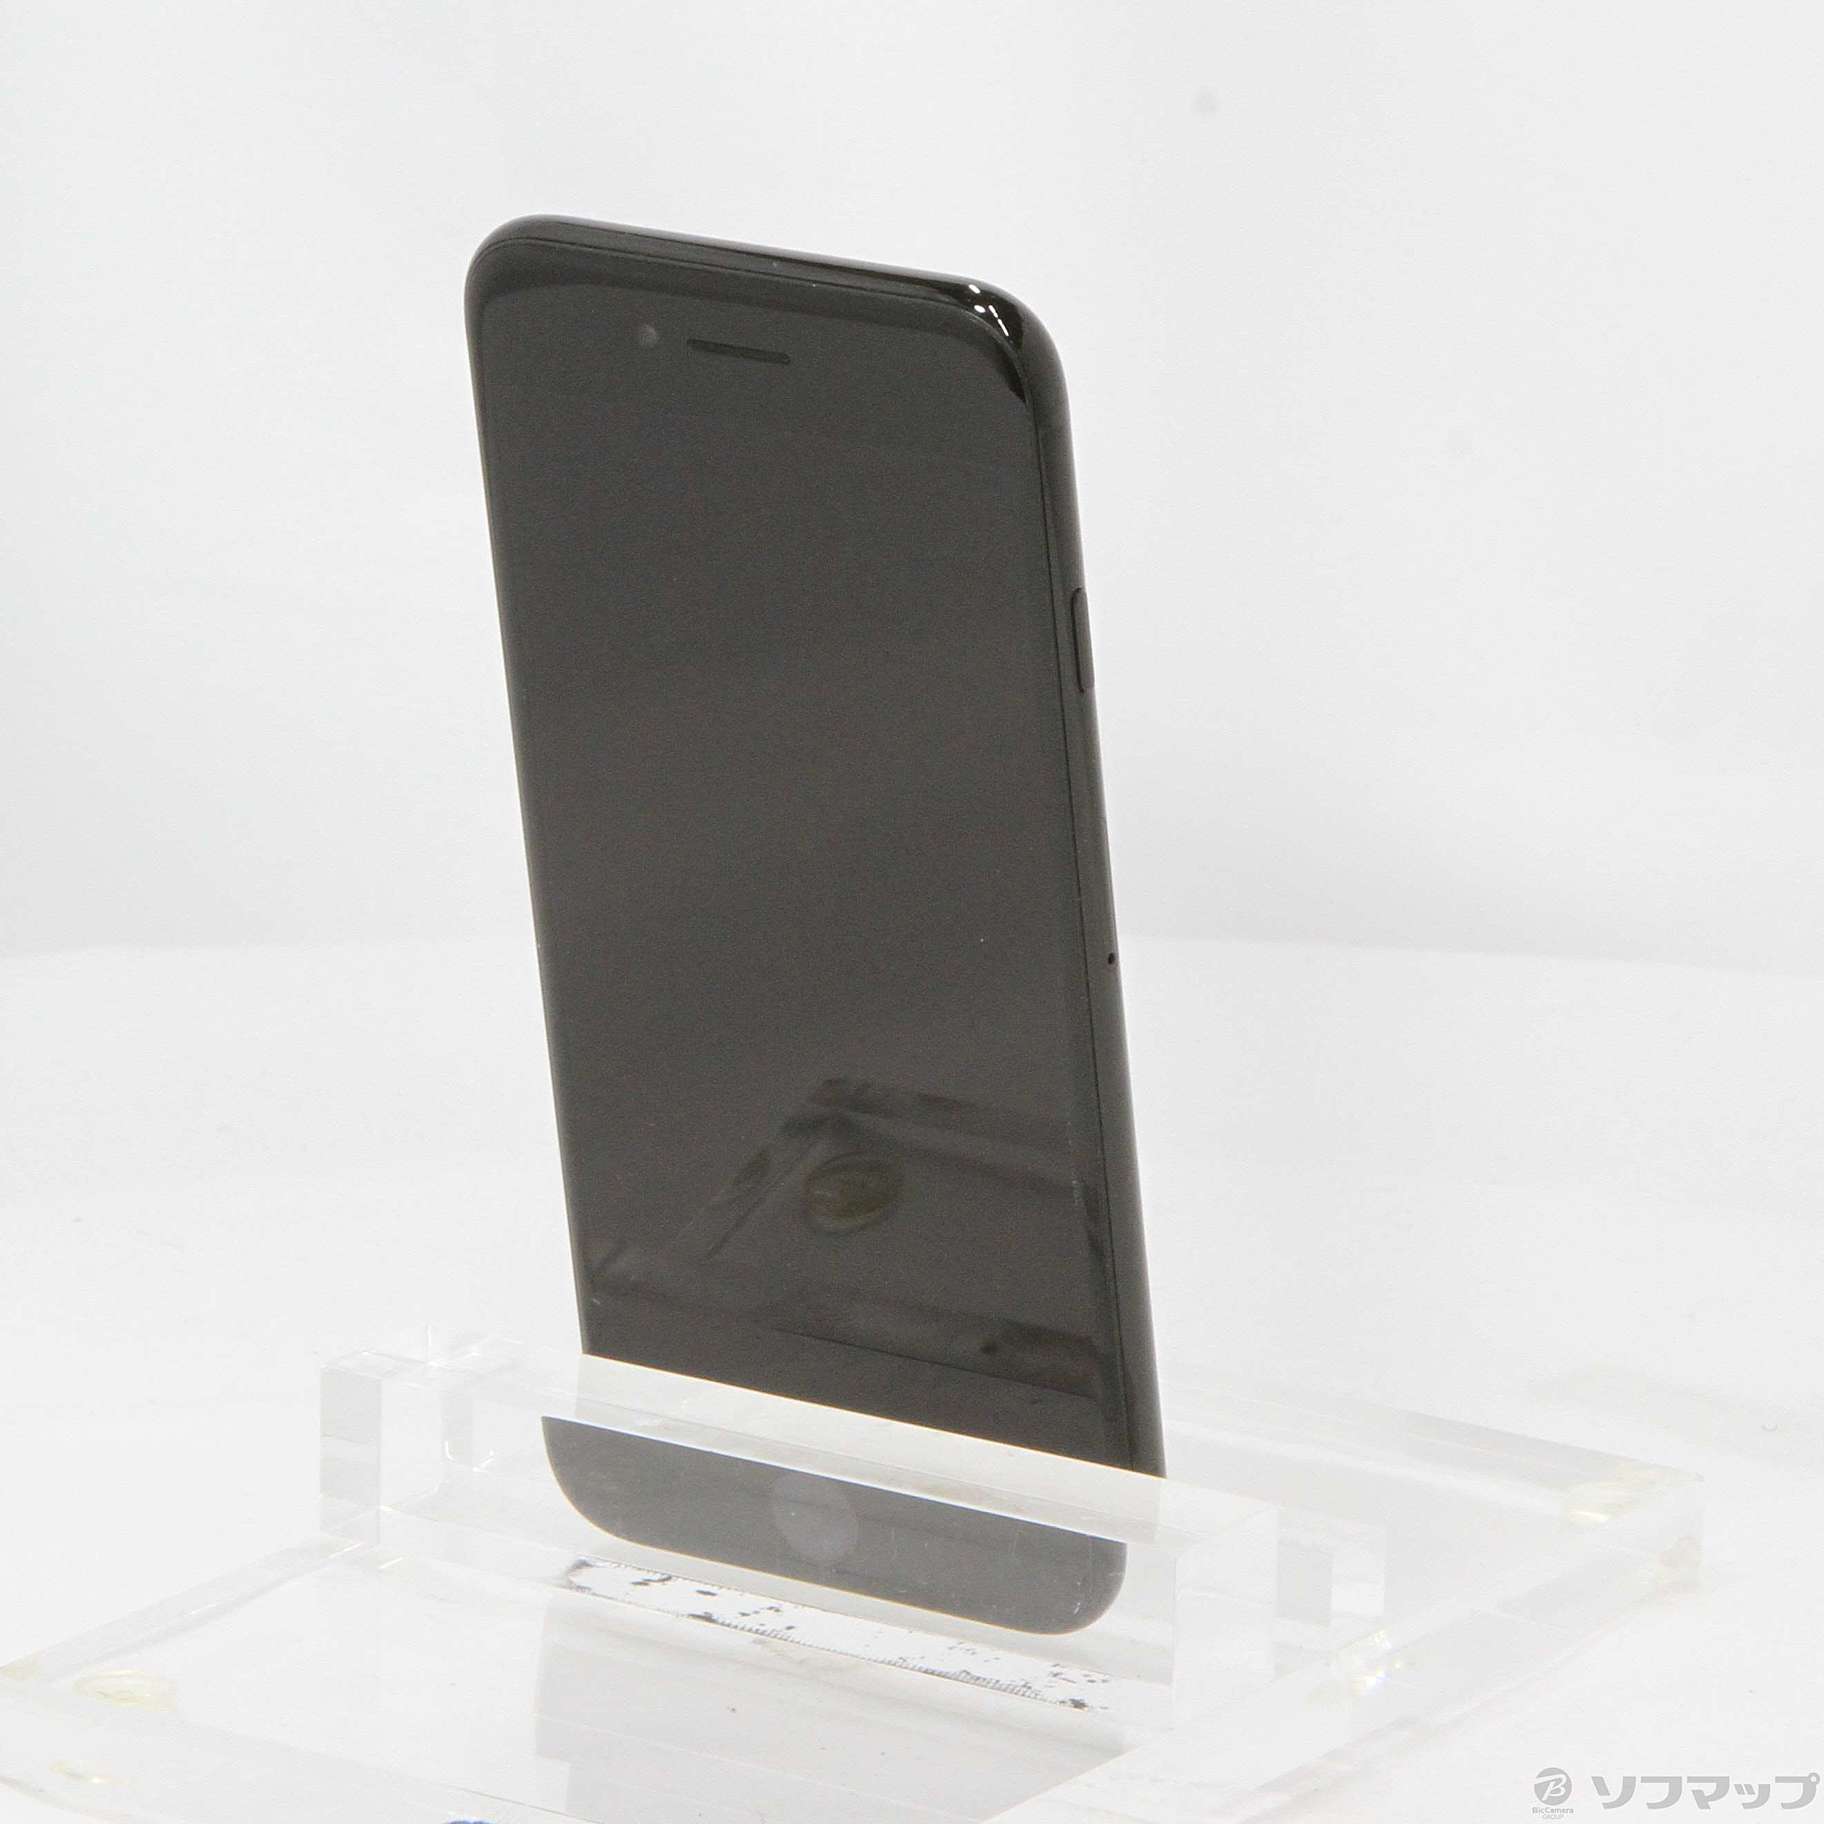 【ご購】iPhone7 128GB ジェットブラック MNCP2J/A スマートフォン本体